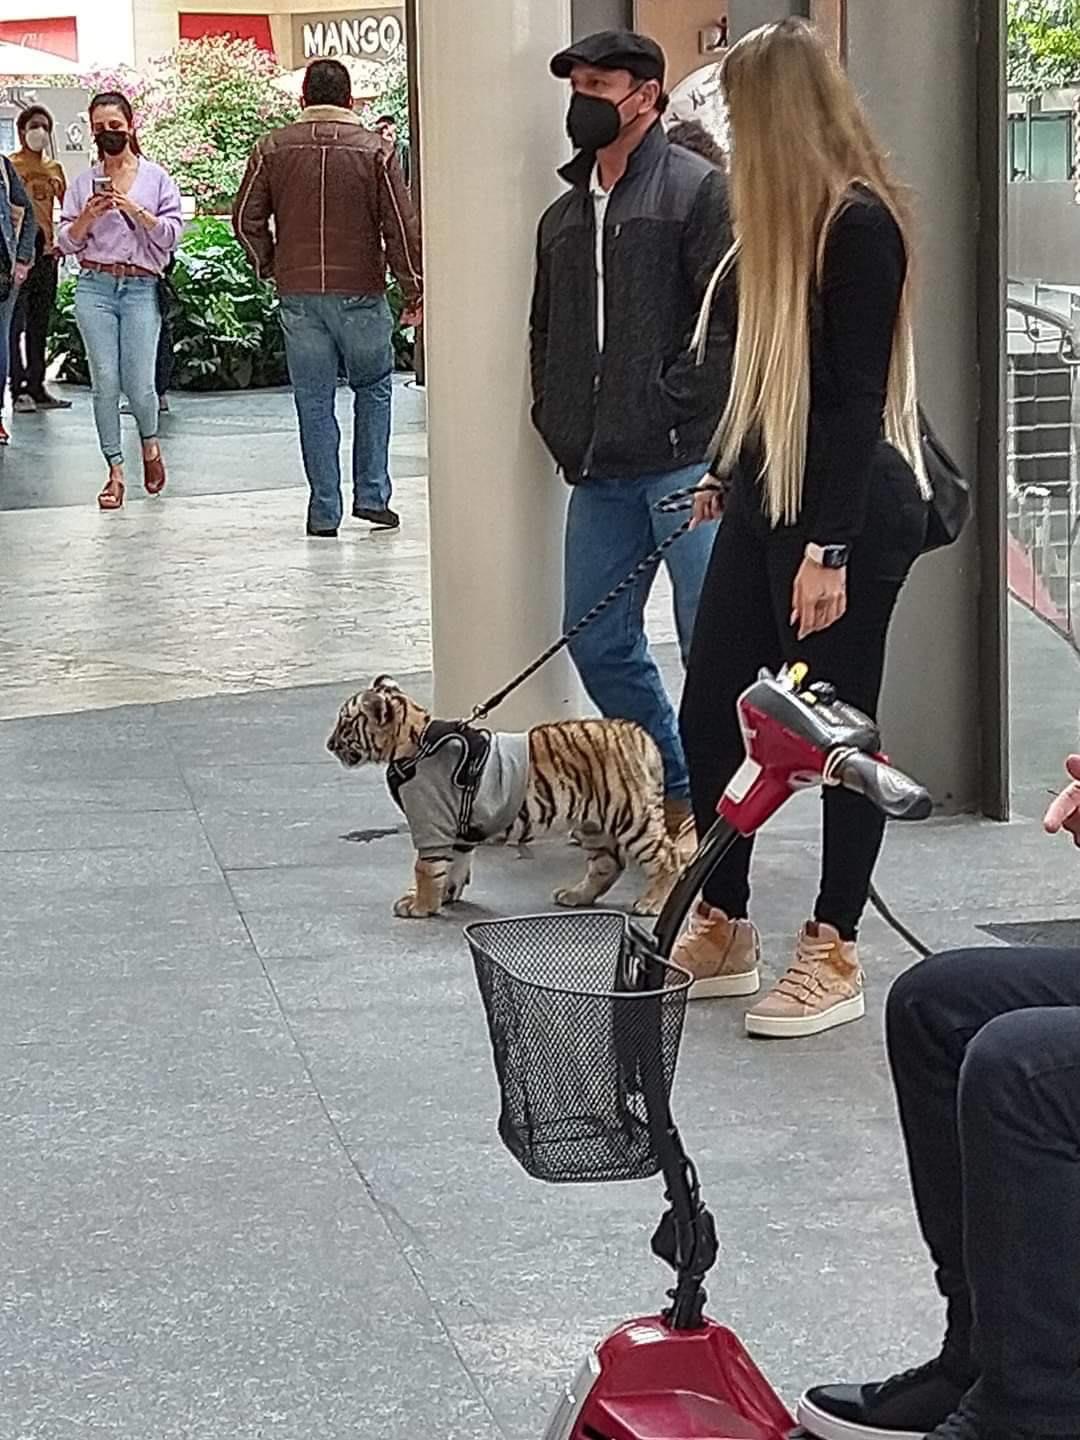 Photo of Mujer pasea a un cachorro de tigre en el centro comercial Antara, en CdMx; la denuncian en redes